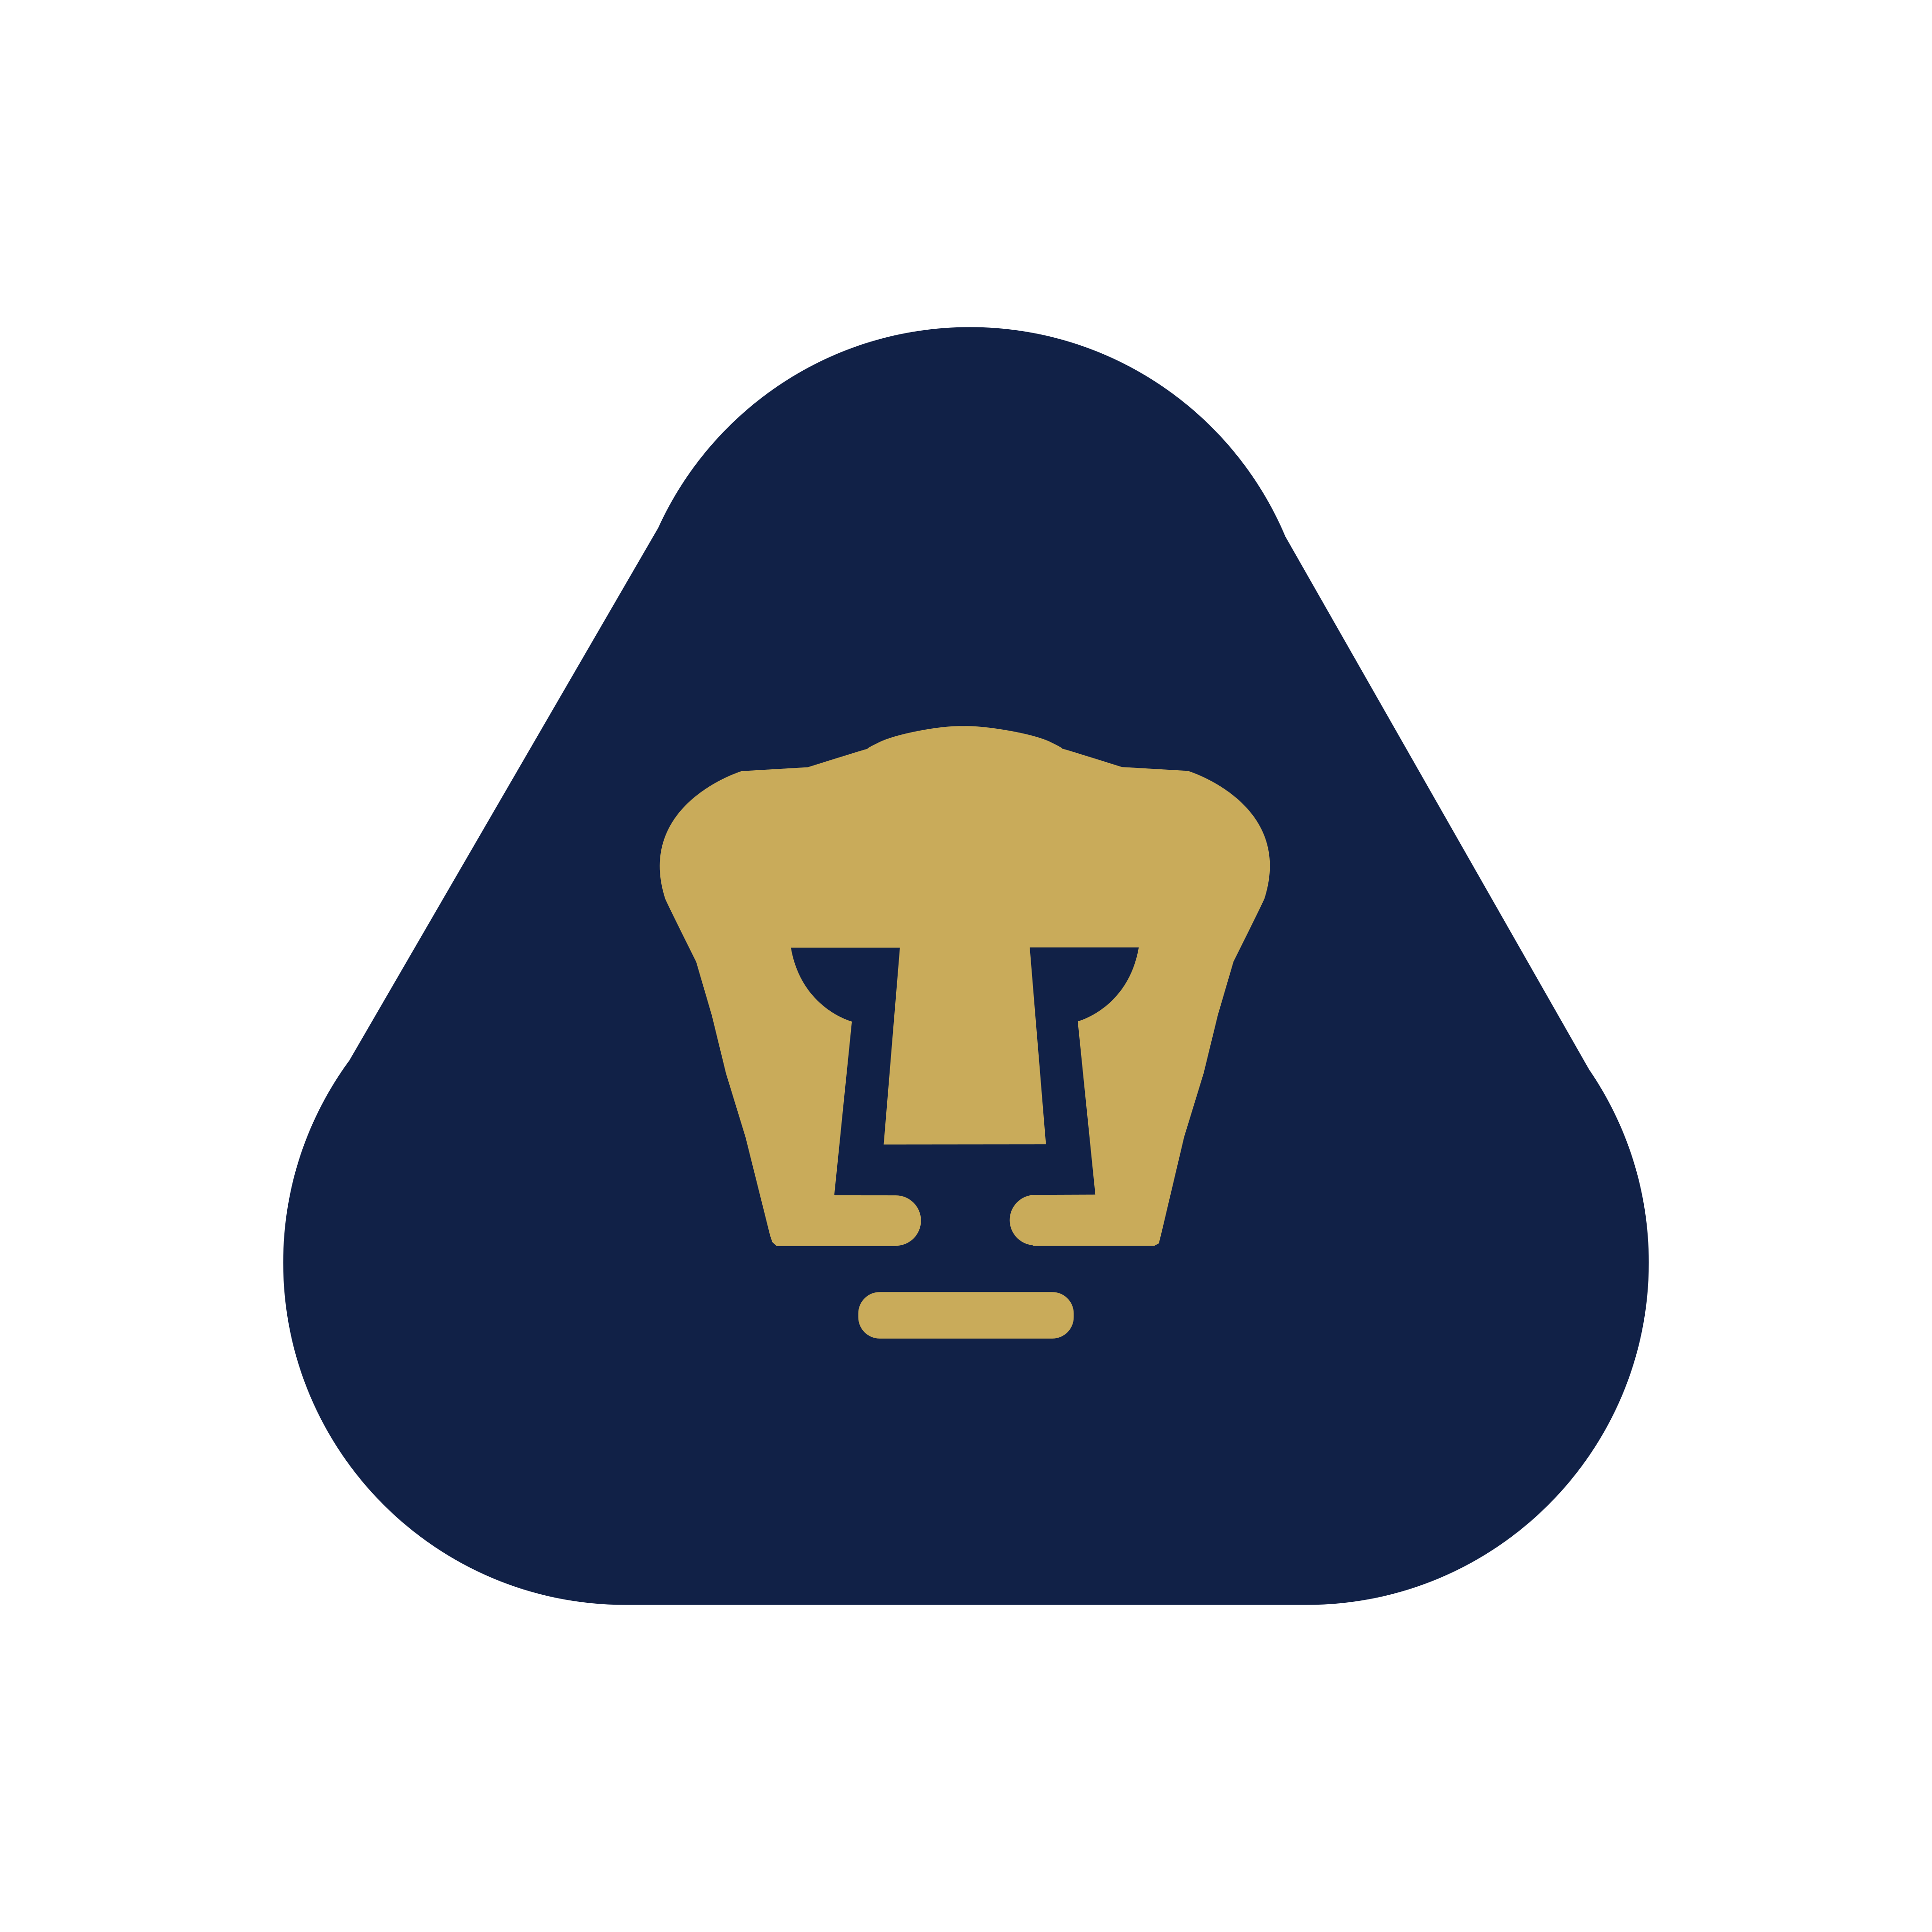 pumas unam logo 0 1 - Pumas UNAM Logo